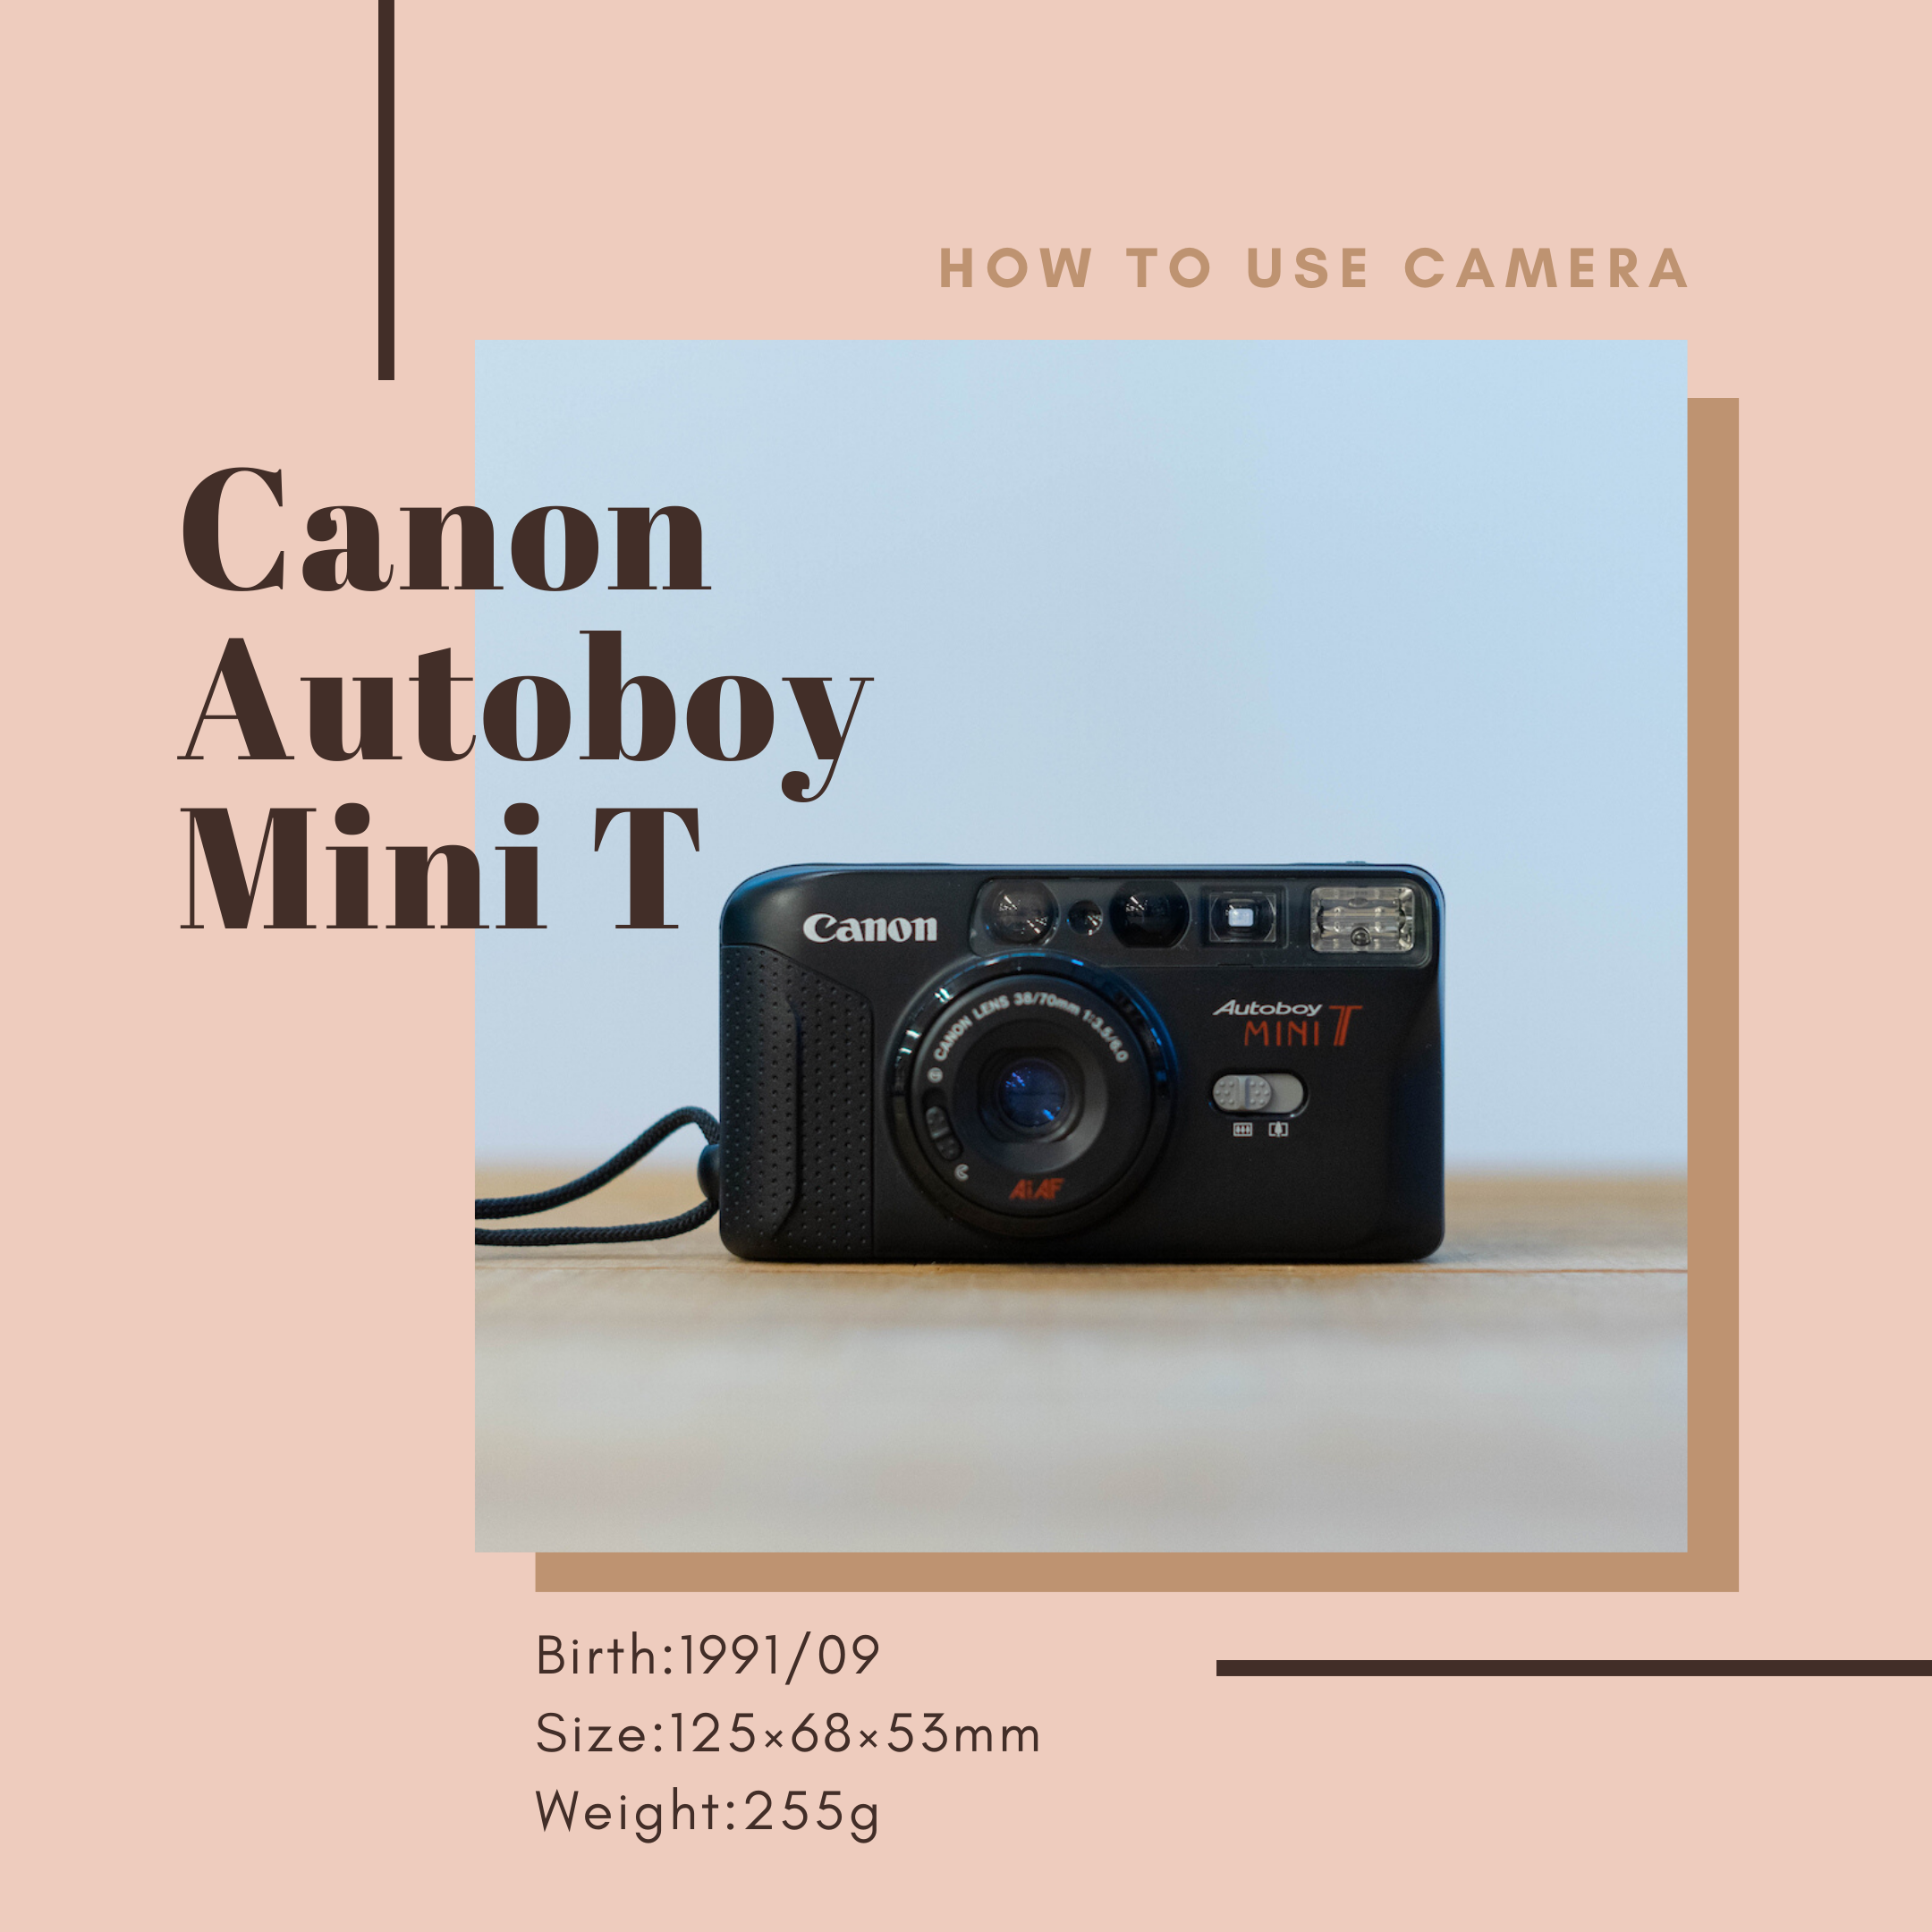 Canon Autoboy Minit Tの使い方 Totte Me Camera